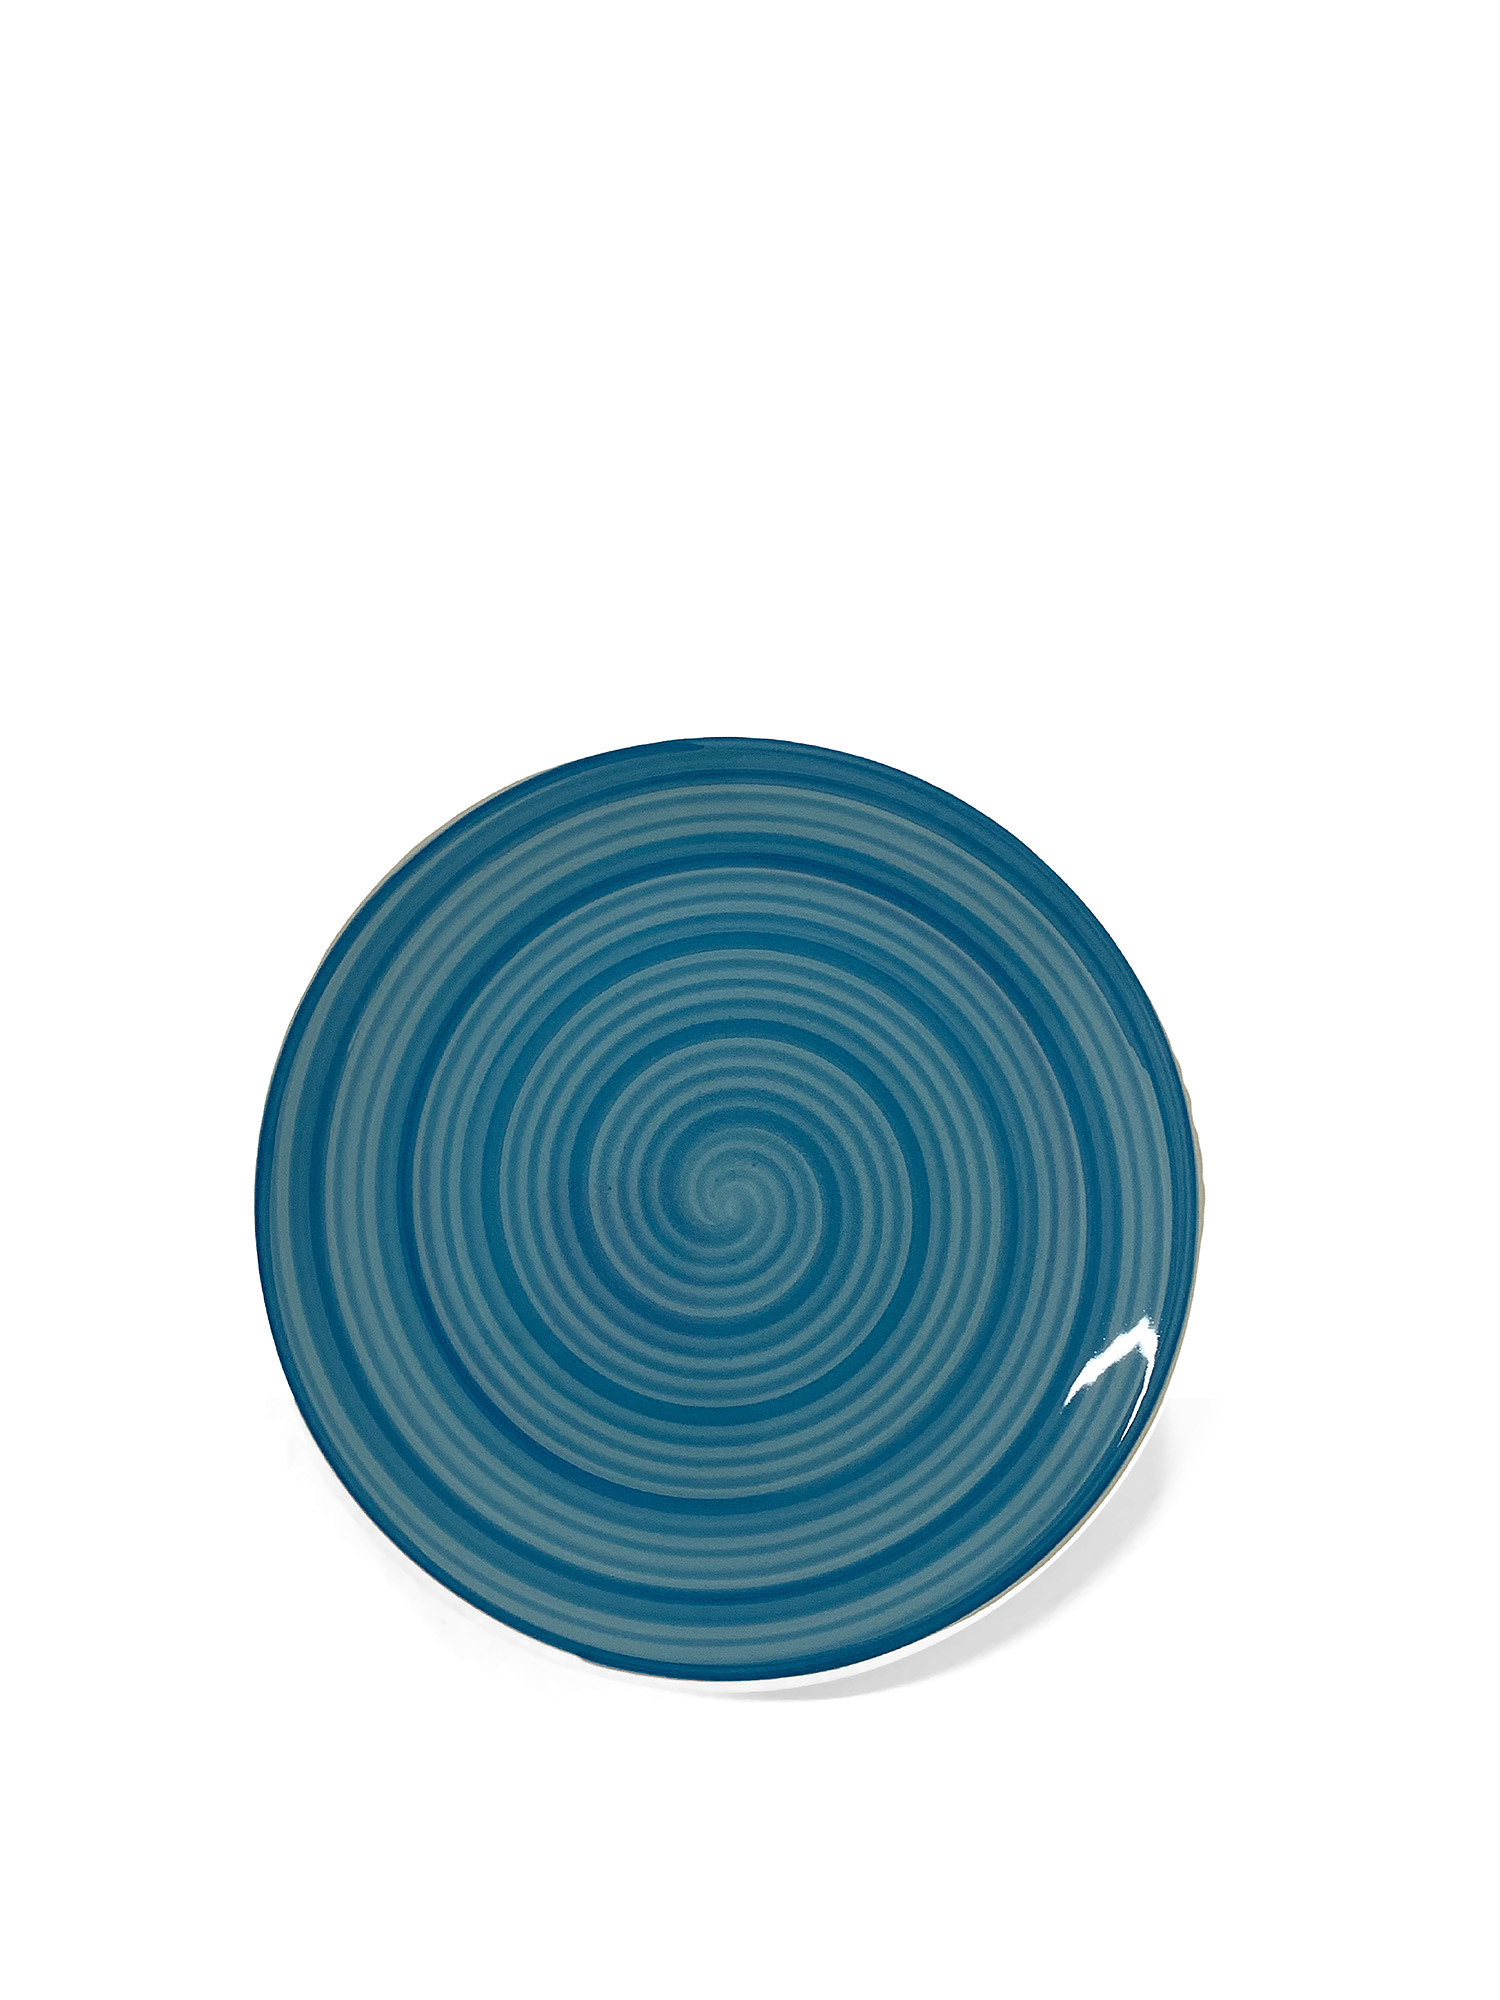 Piatto frutta ceramica dipinta a mano Spirale, Azzurro, large image number 0